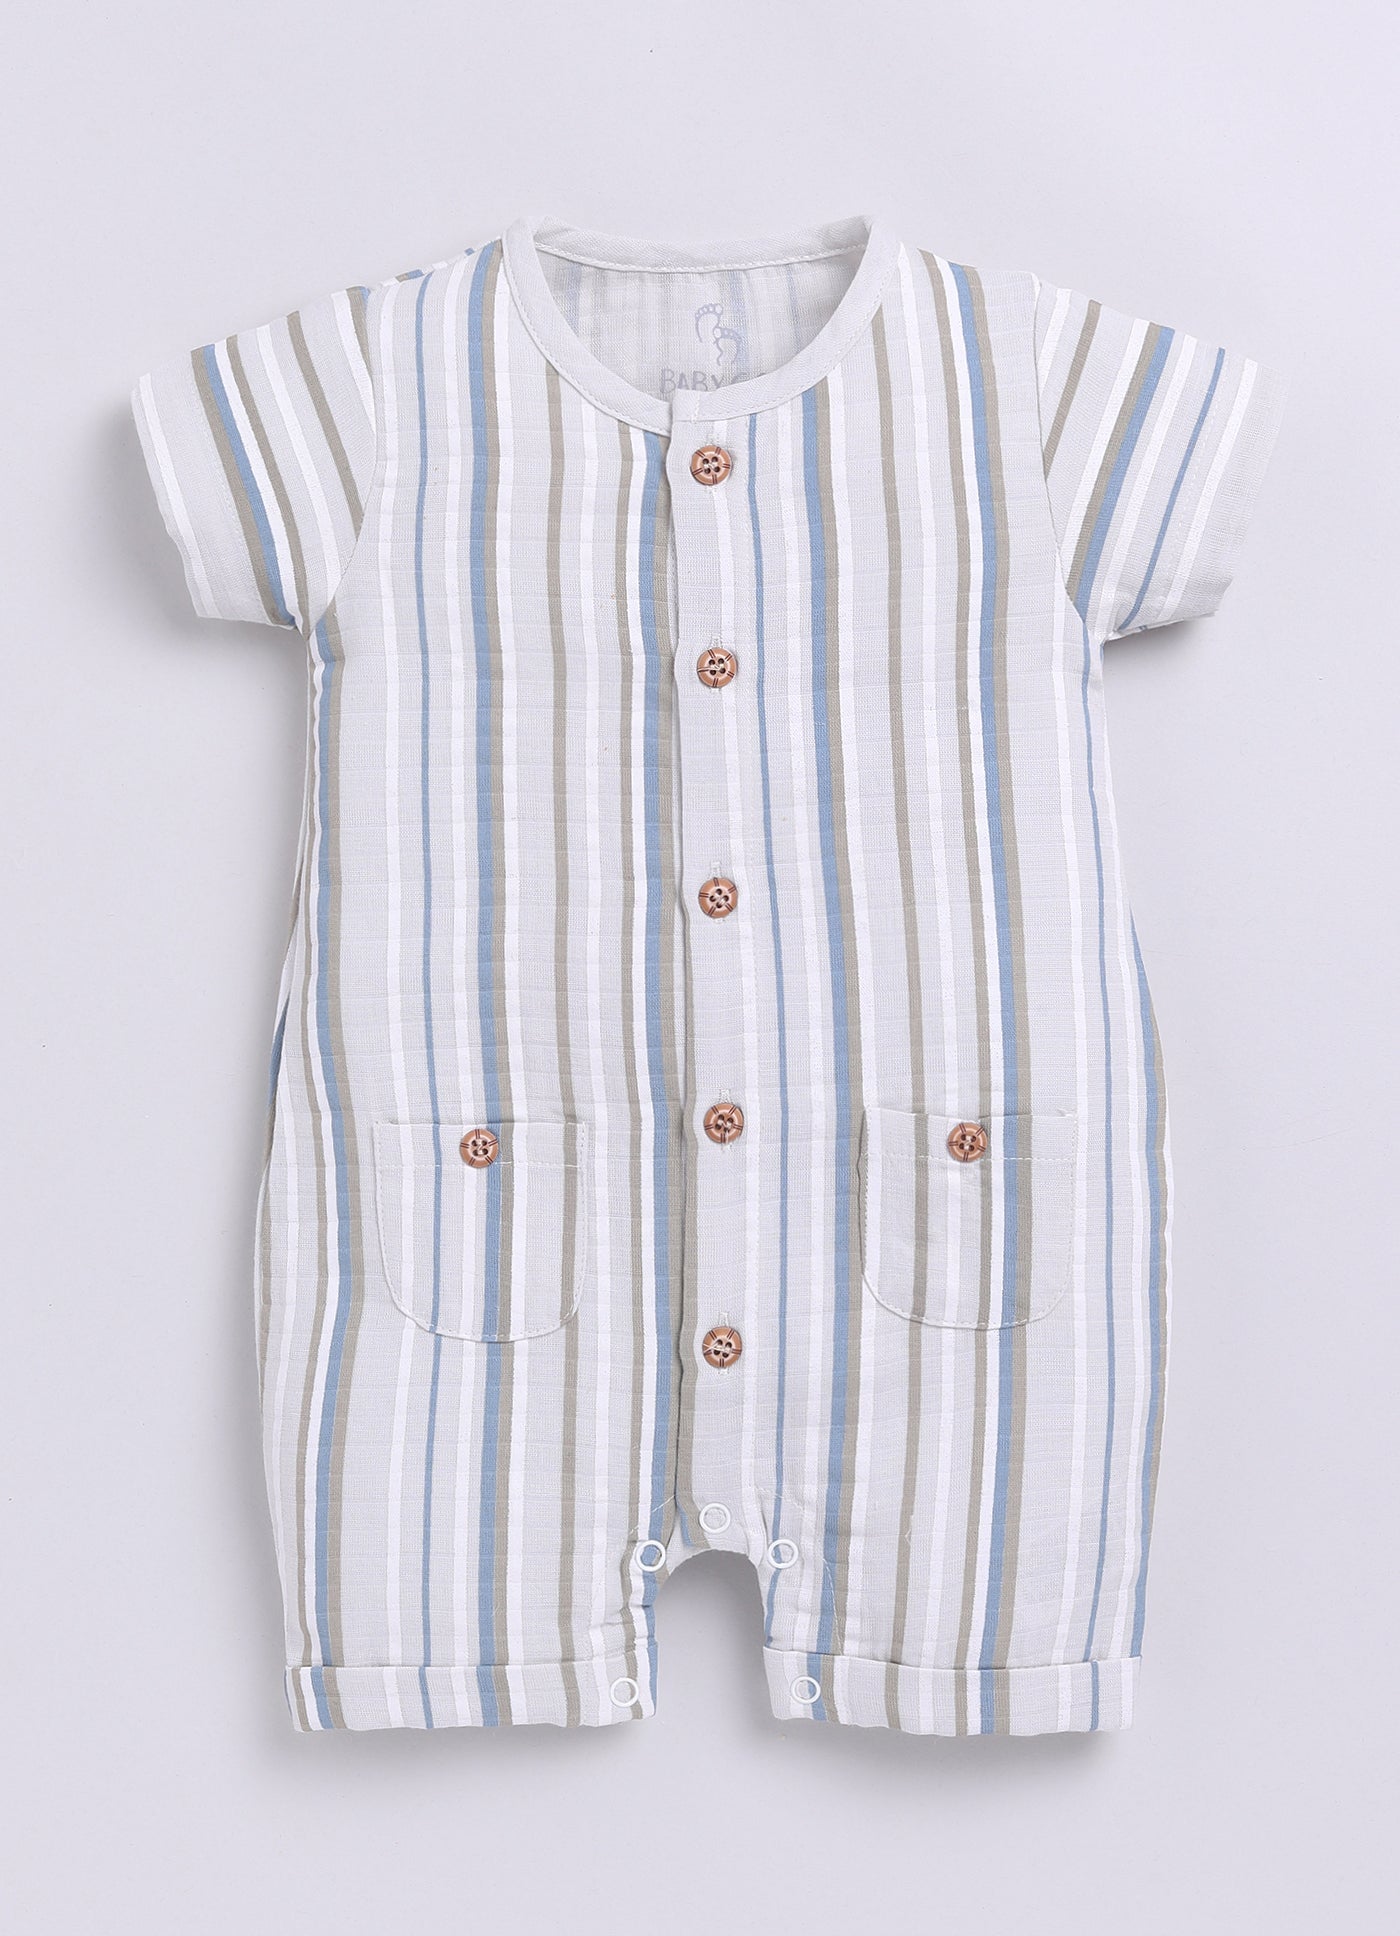 Multi Color Striped Baby Boy Half Sleeves Romper-BEIGE